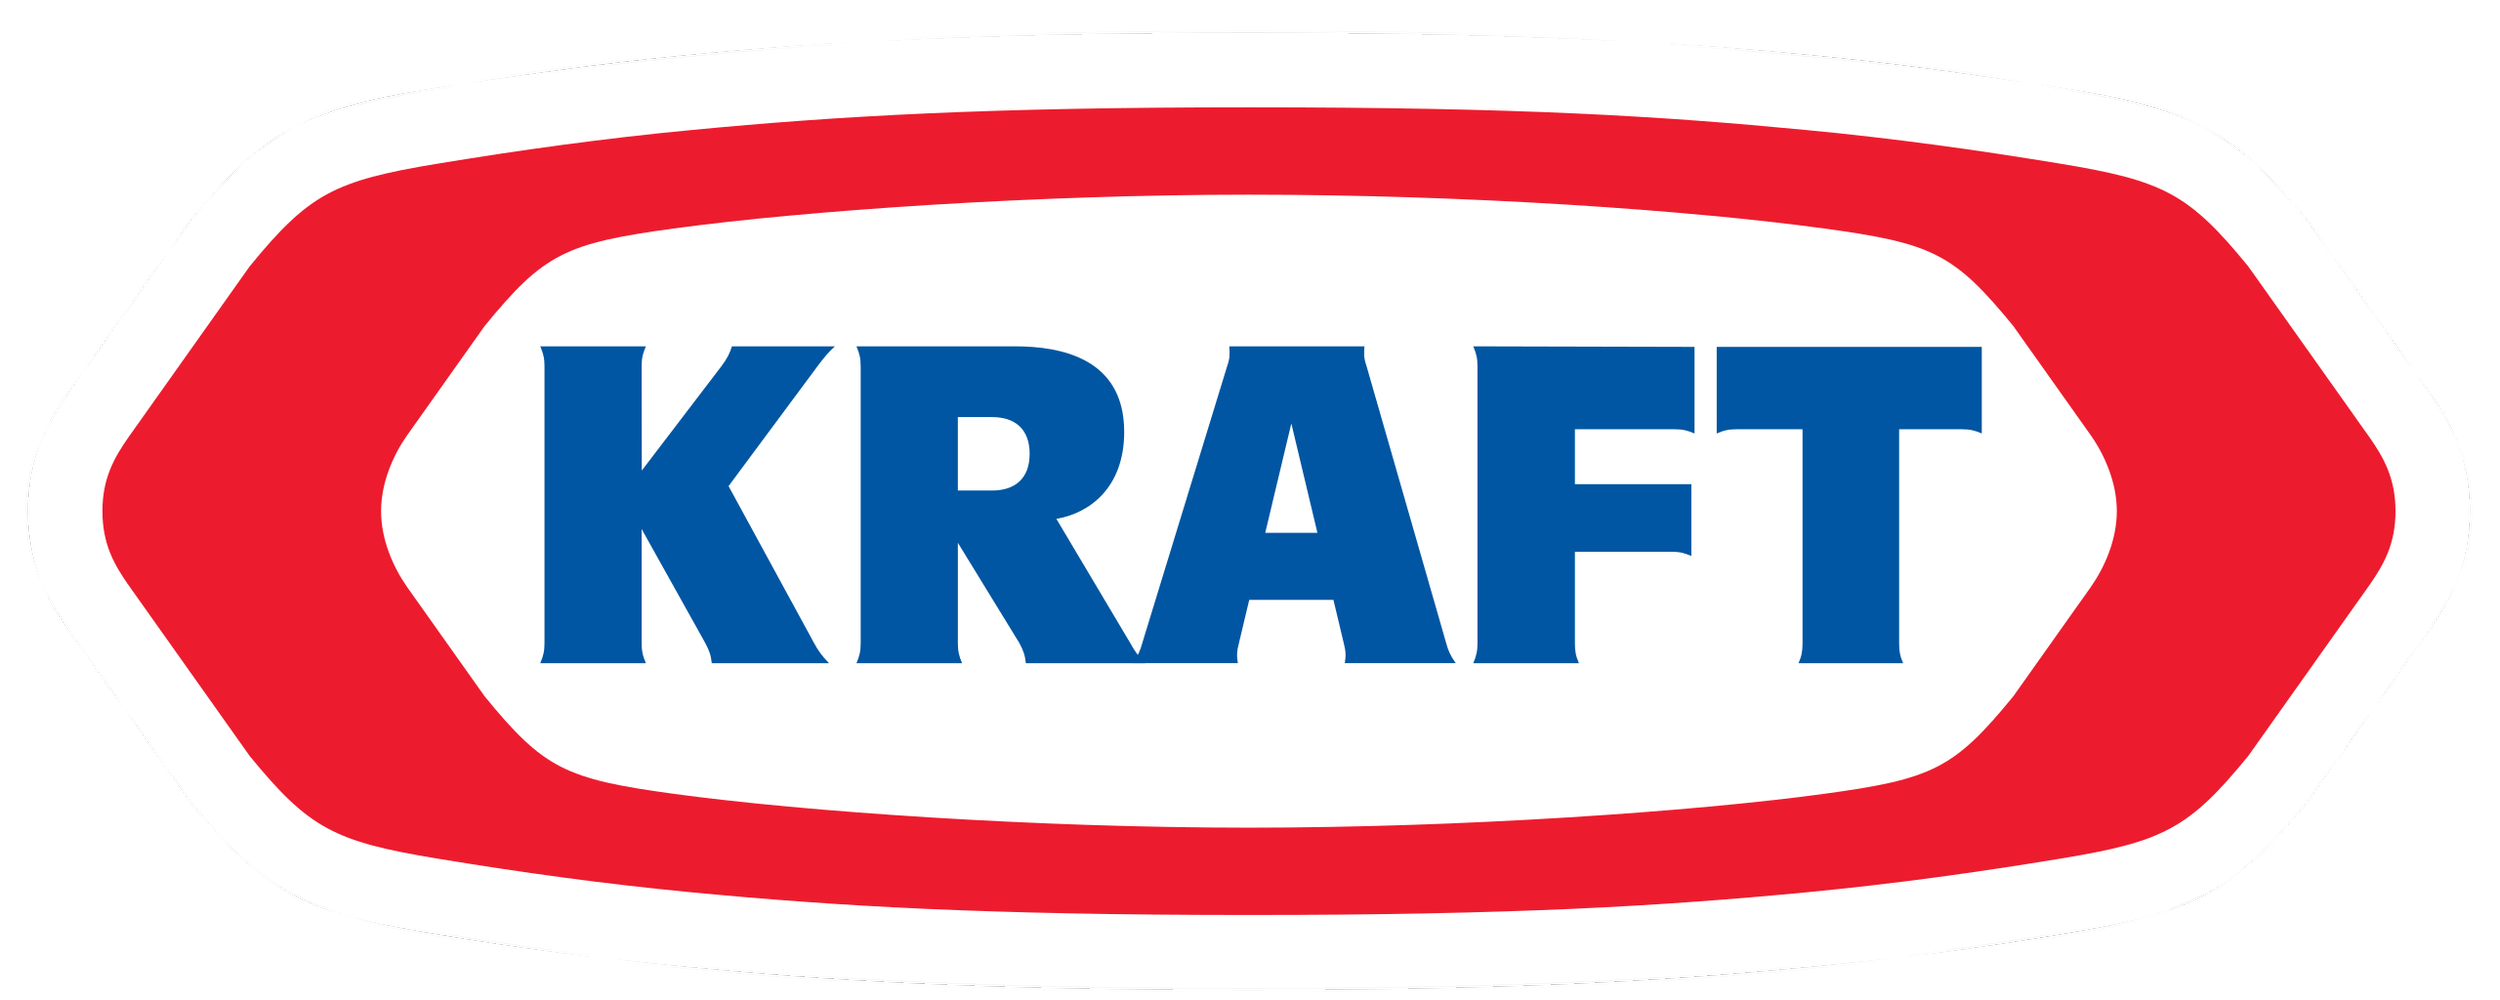 Kraft_logo.png